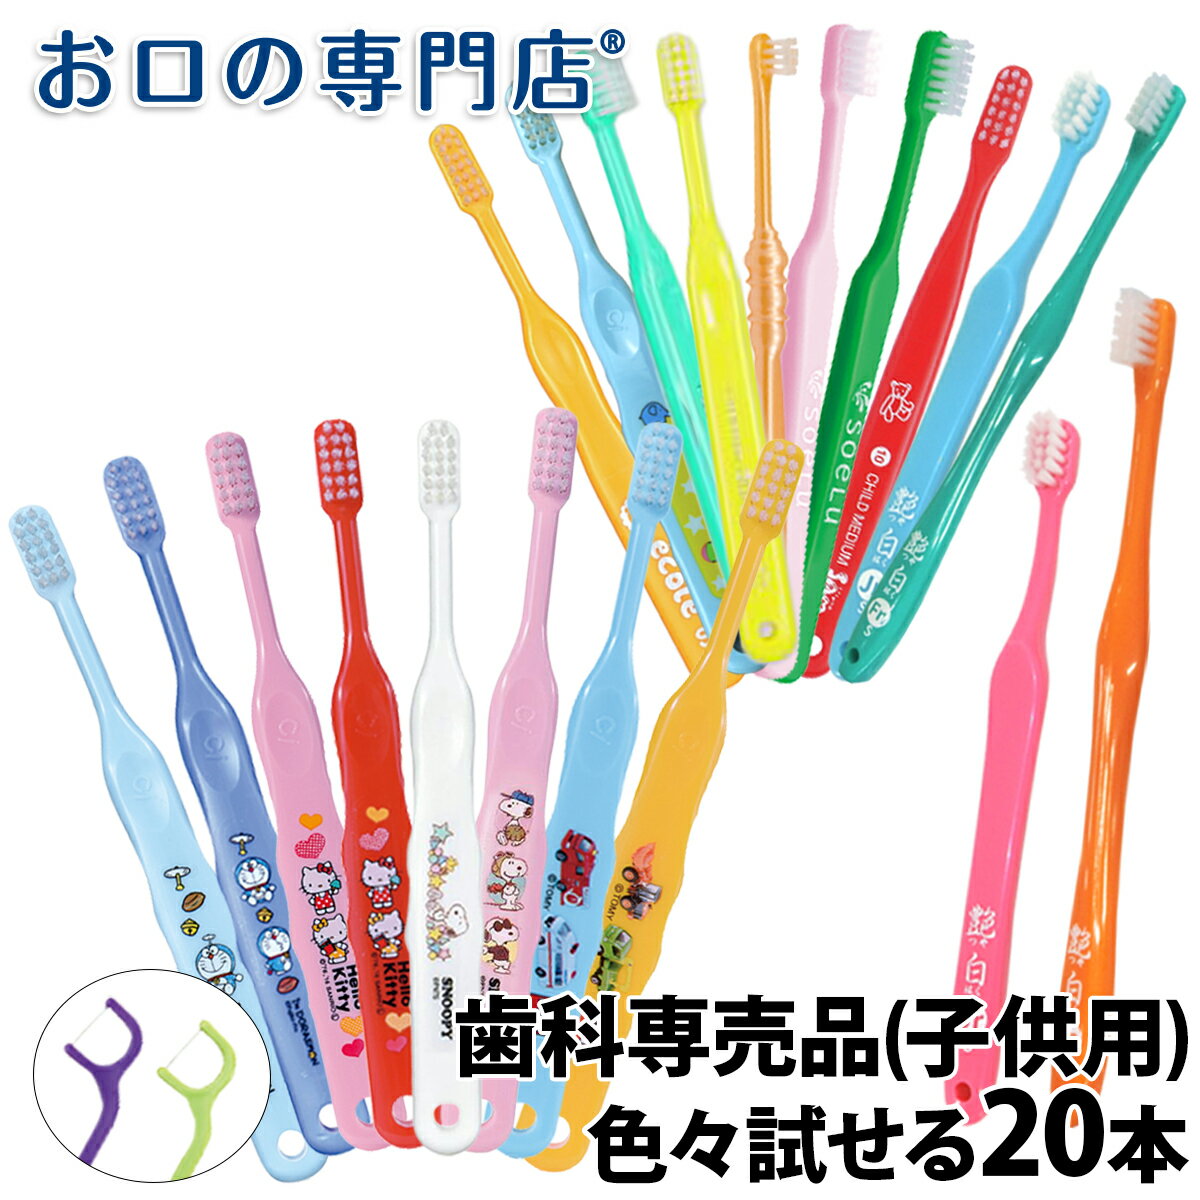 【送料無料】歯科専売品 子供用 キャラクター入り歯ブラシ 2